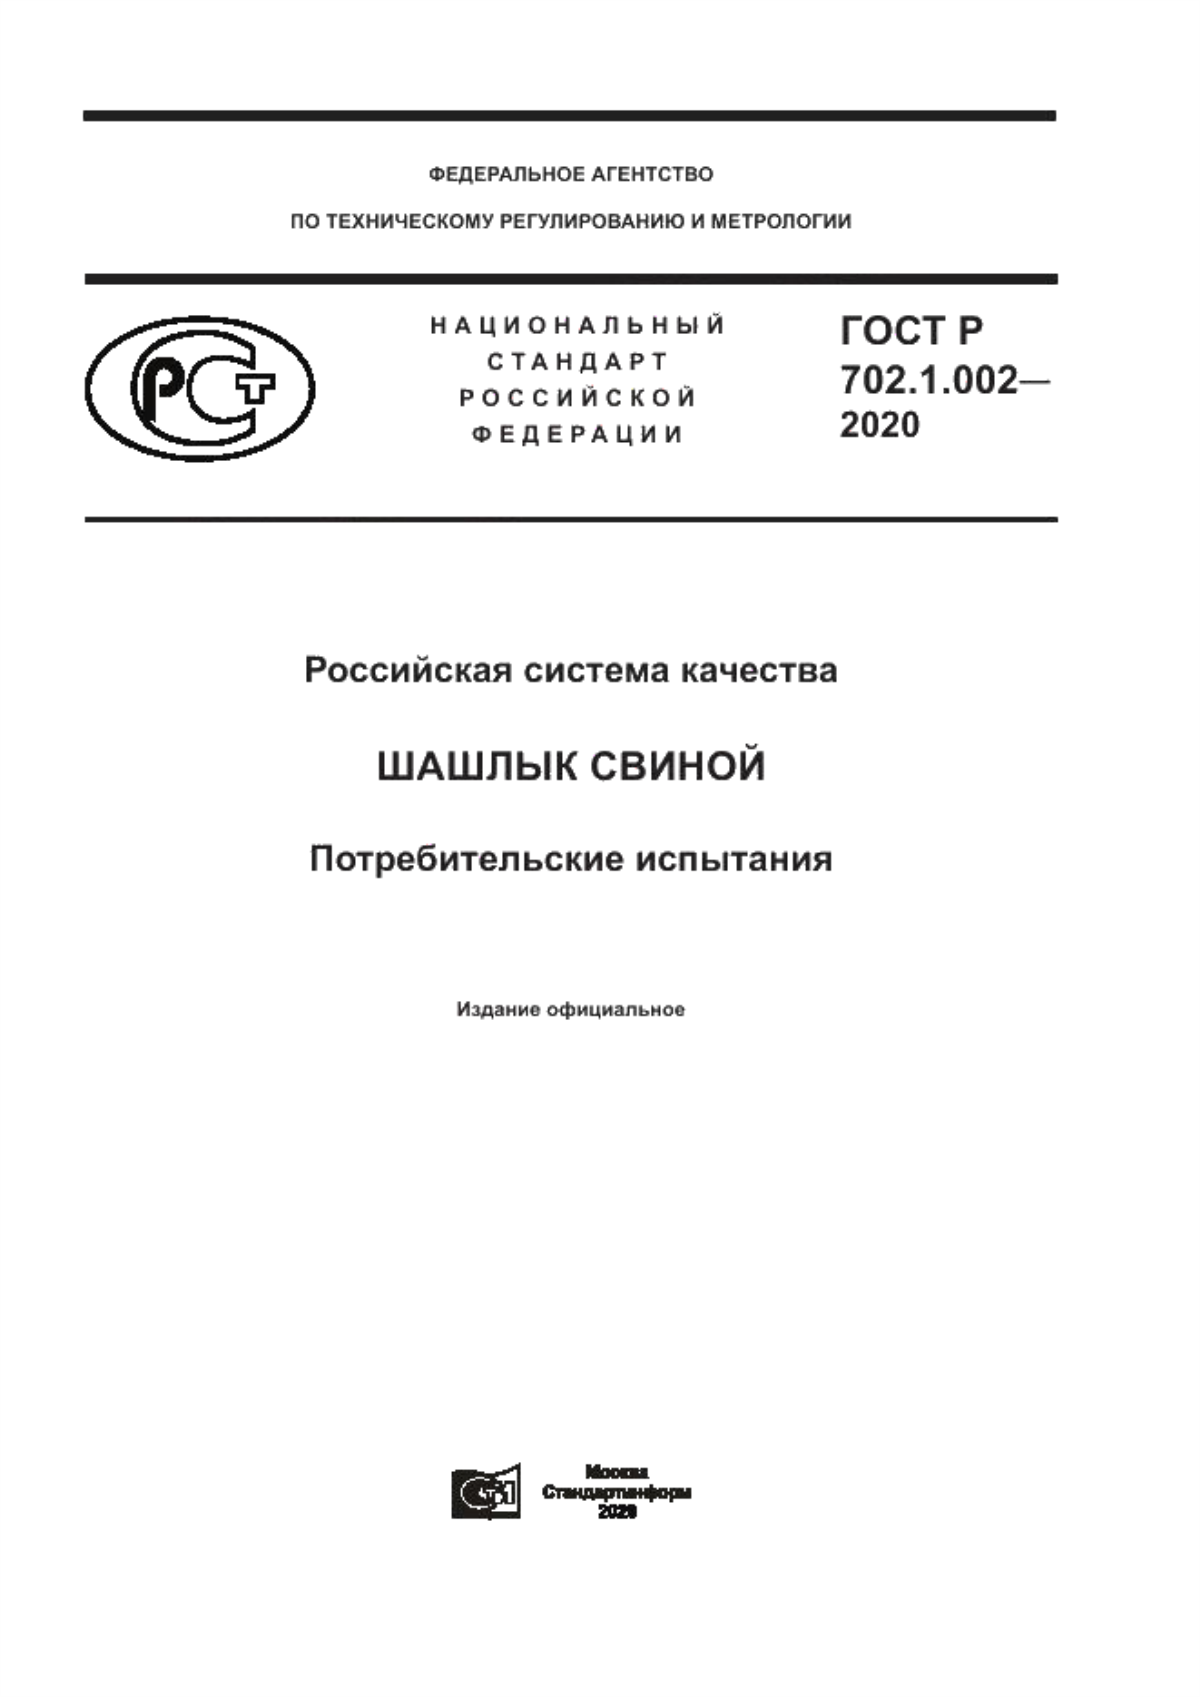 ГОСТ Р 702.1.002-2020 Российская система качества. Шашлык свиной. Потребительские испытания